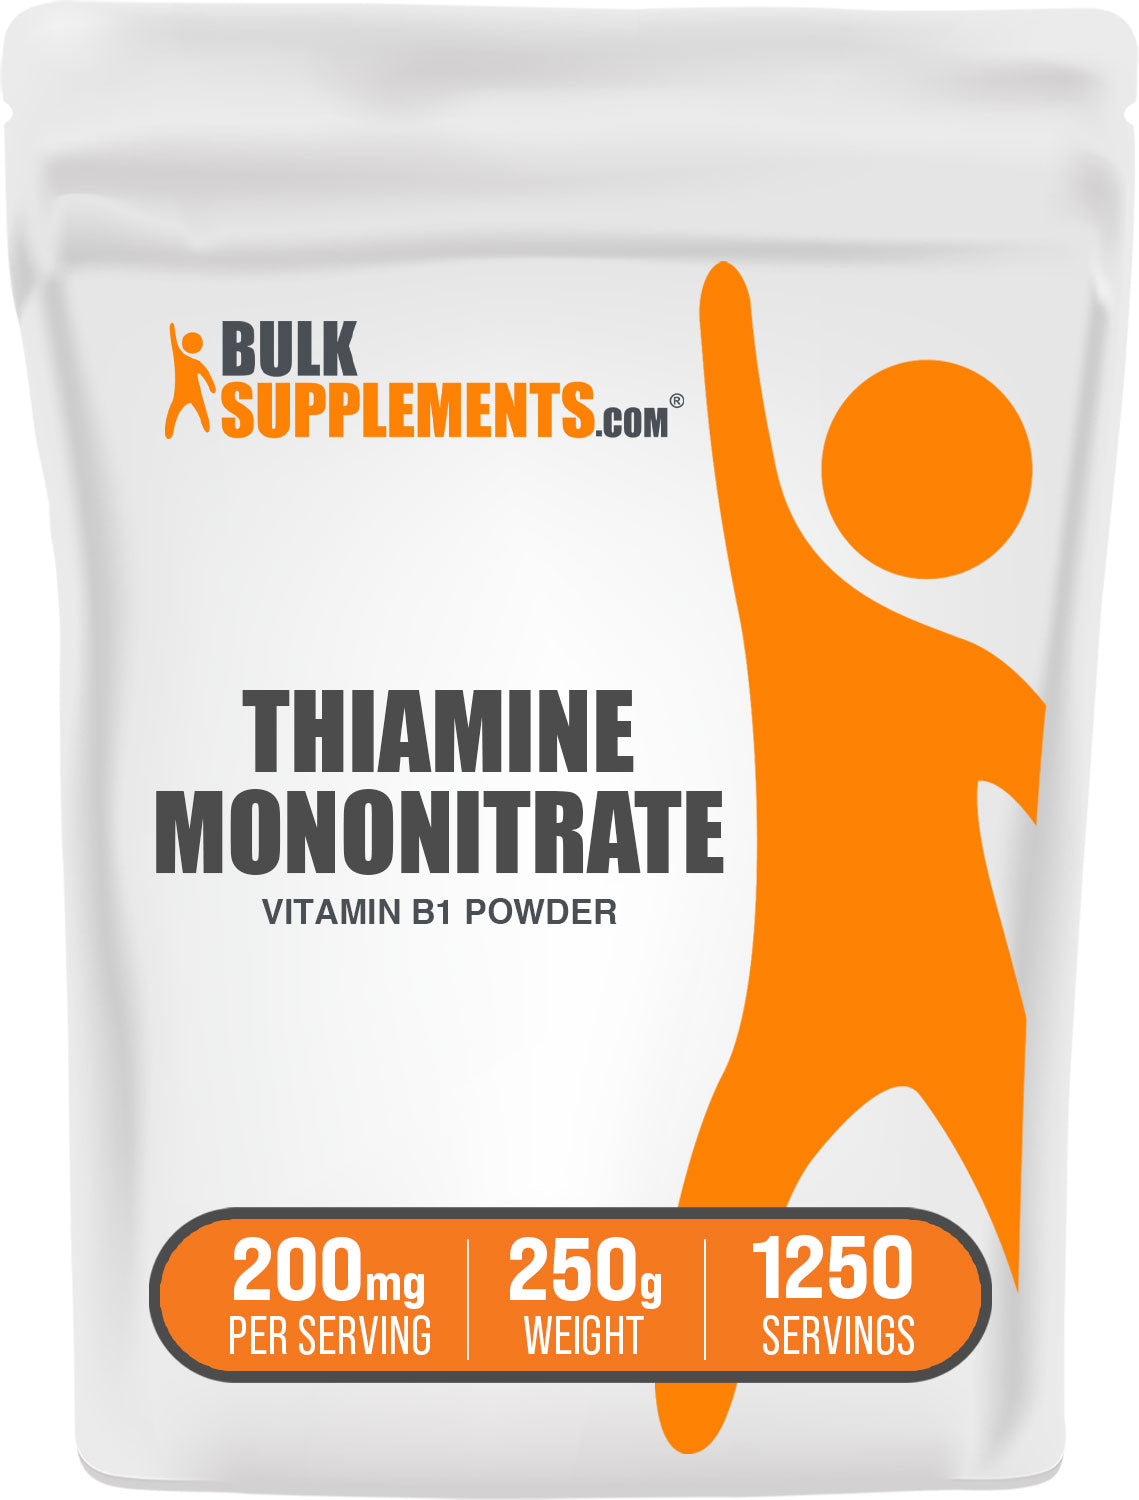 BulkSupplements.com Thiamine Mononitrate Vitamin B1 Powder 250g Bag